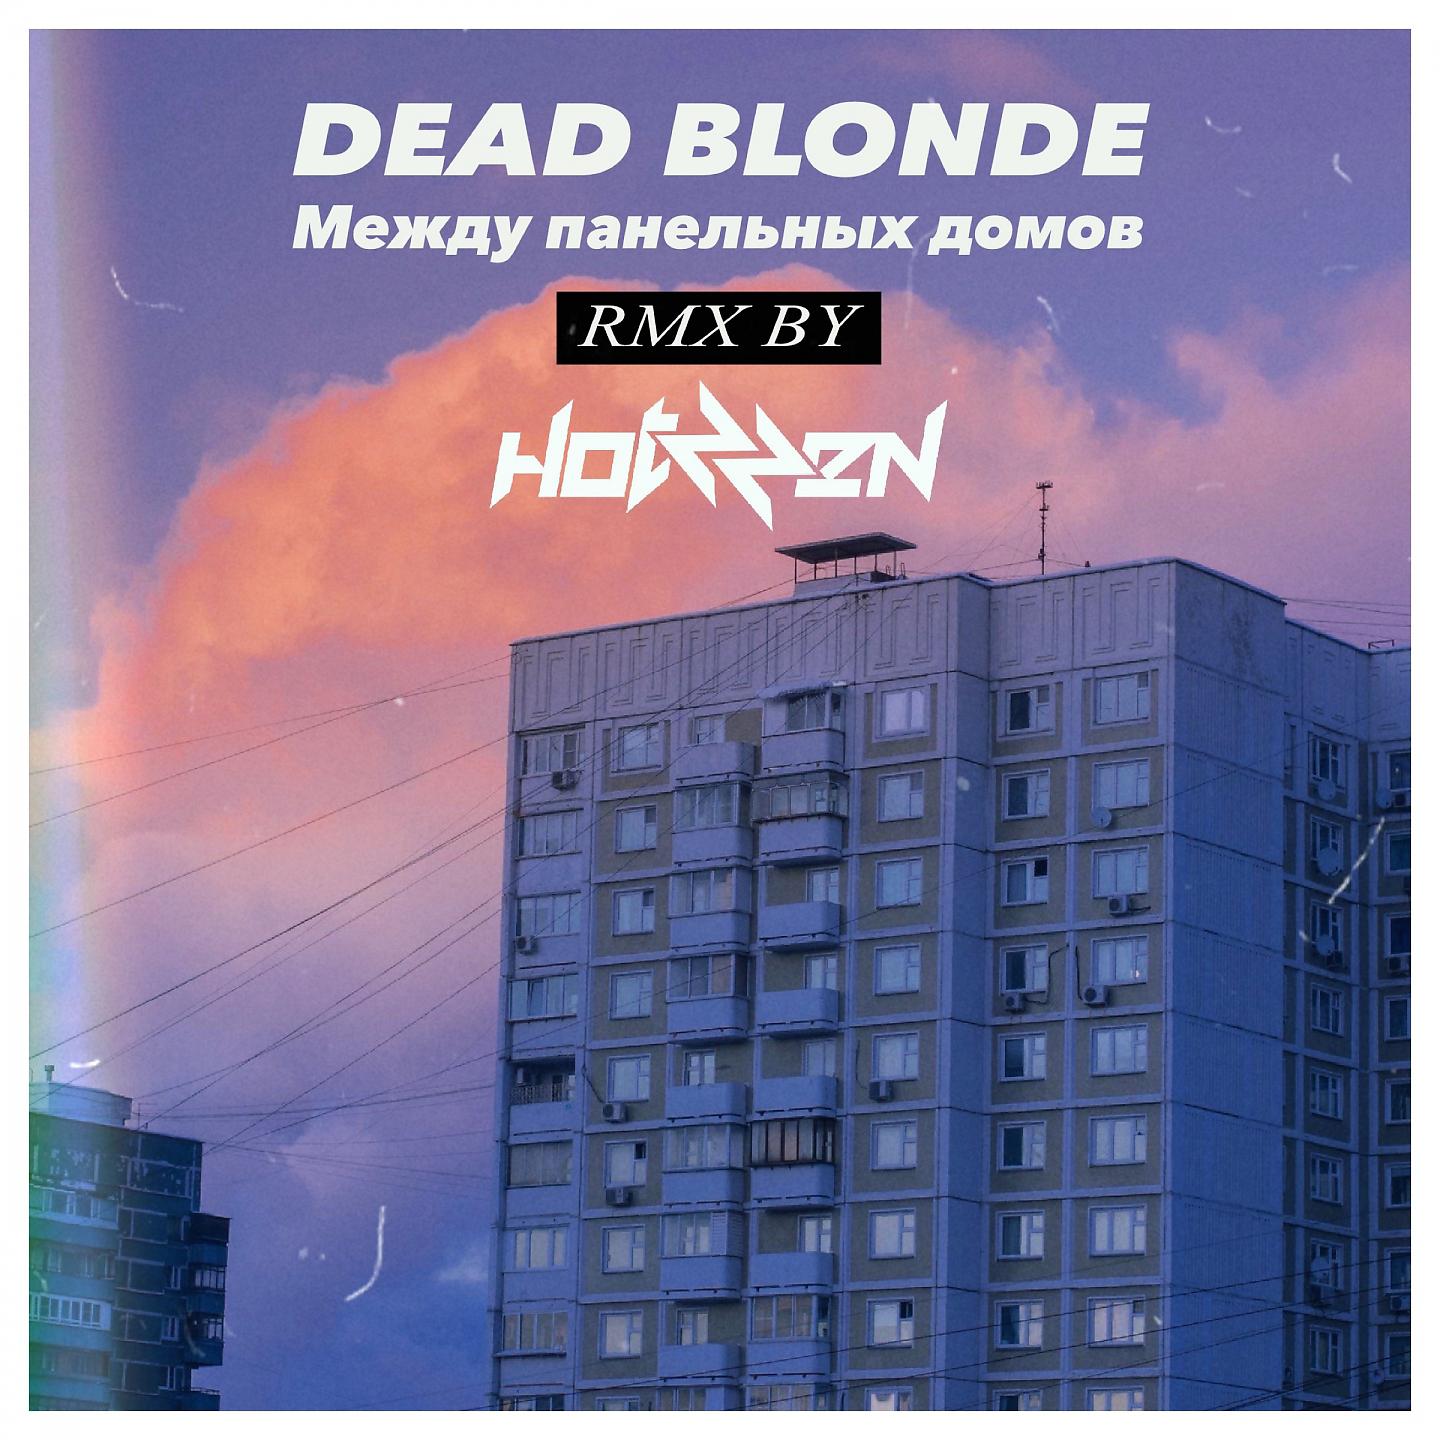 Между панельных домов Dead blonde. Dead blonde между панельных домов hotzzen Remix. Dead blonde альбом. Dead blonde обложка альбома.